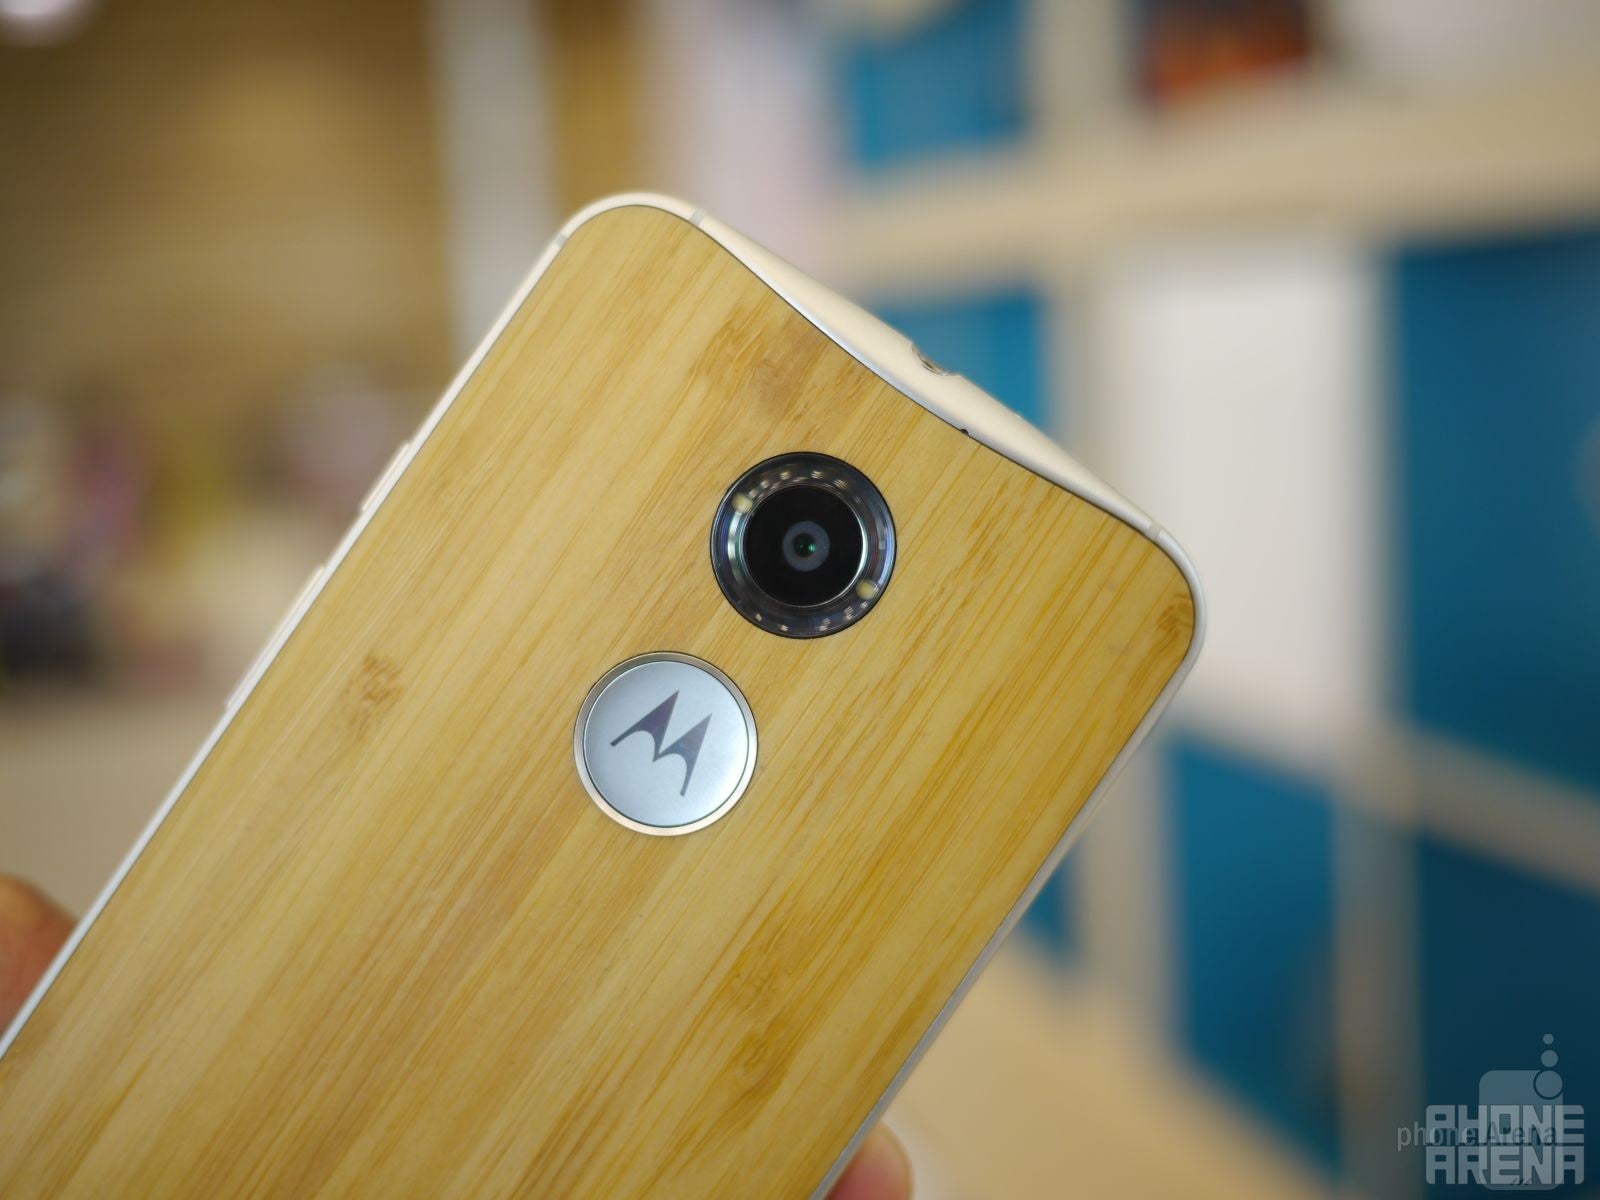 Motorola Moto X (2014) hands-on